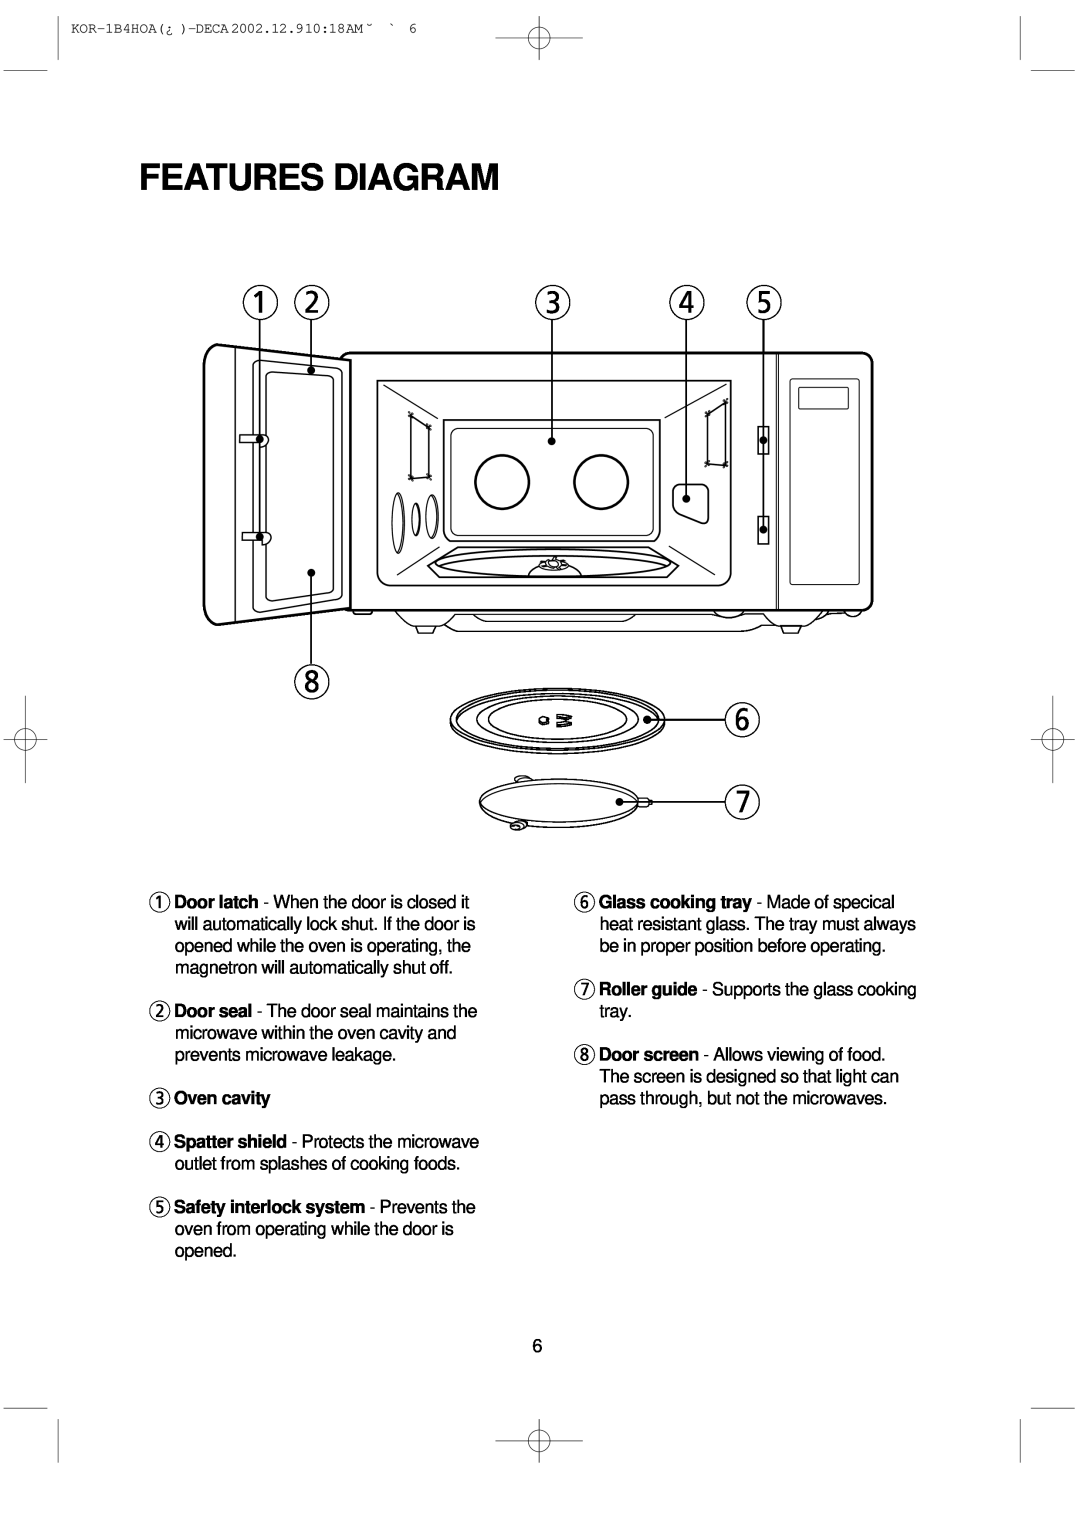 Daewoo KOR-1B4H manual Features Diagram, Oven cavity 